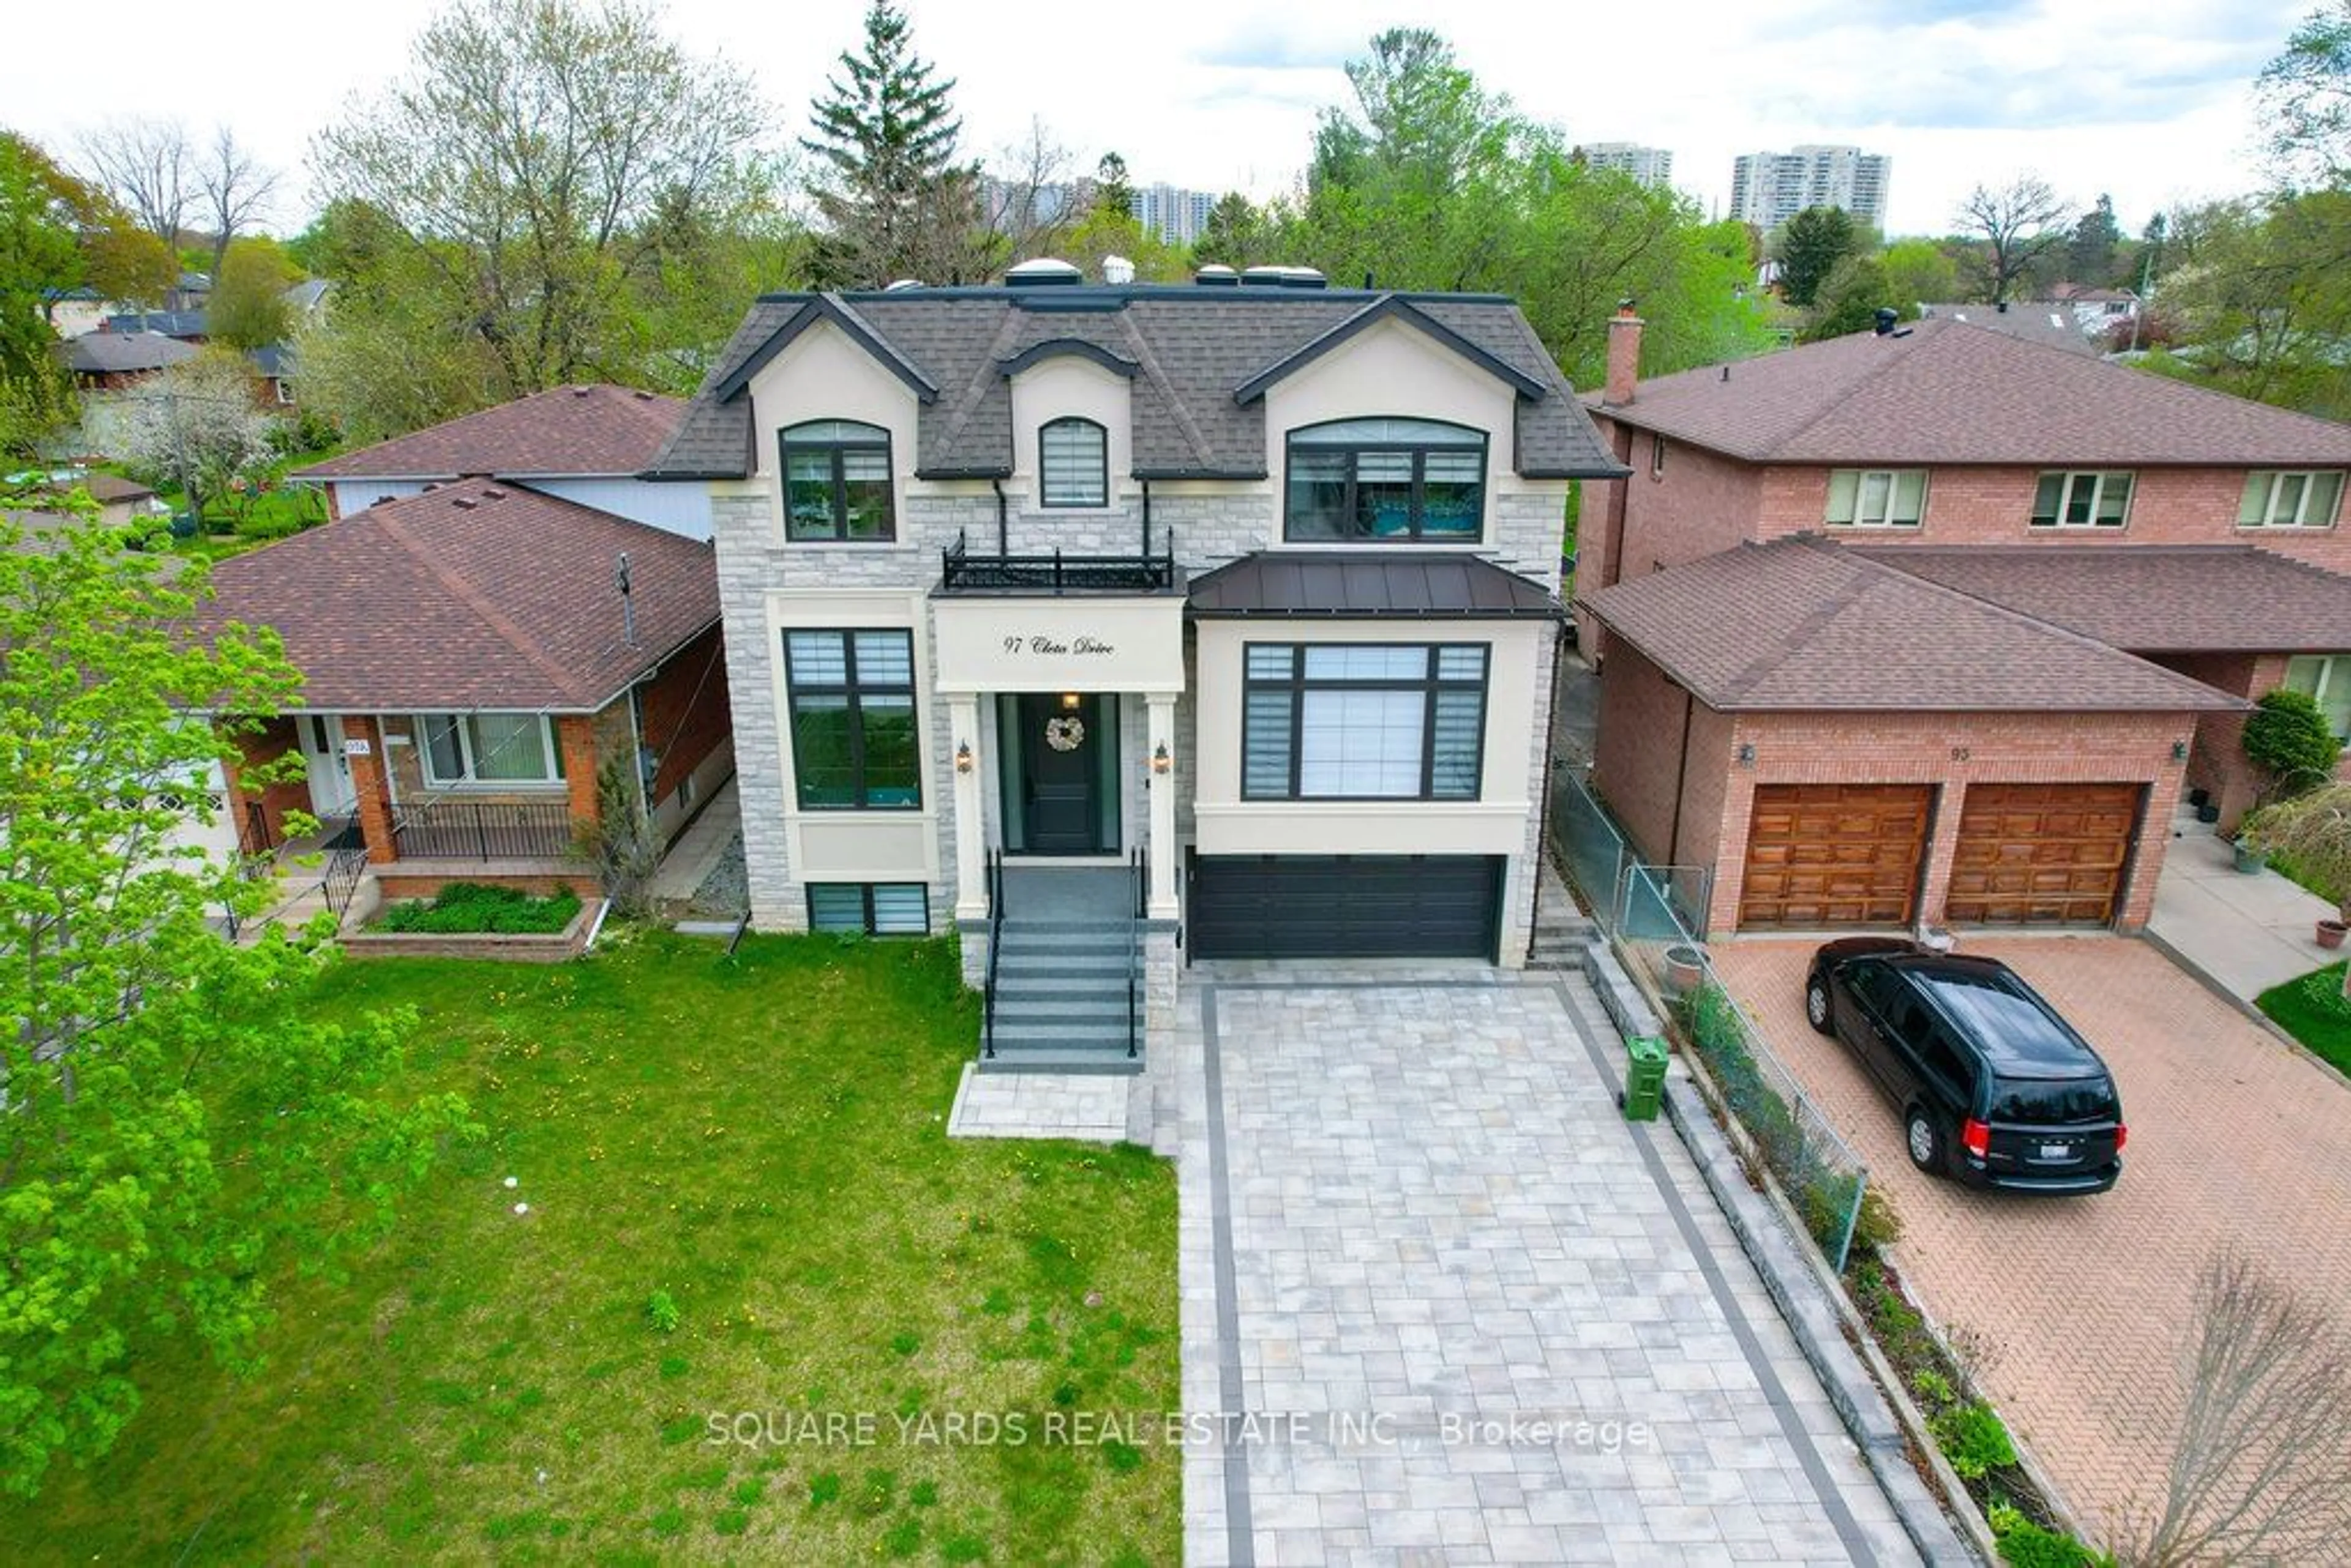 Home with brick exterior material for 97 Cleta Dr, Toronto Ontario M1K 3G8